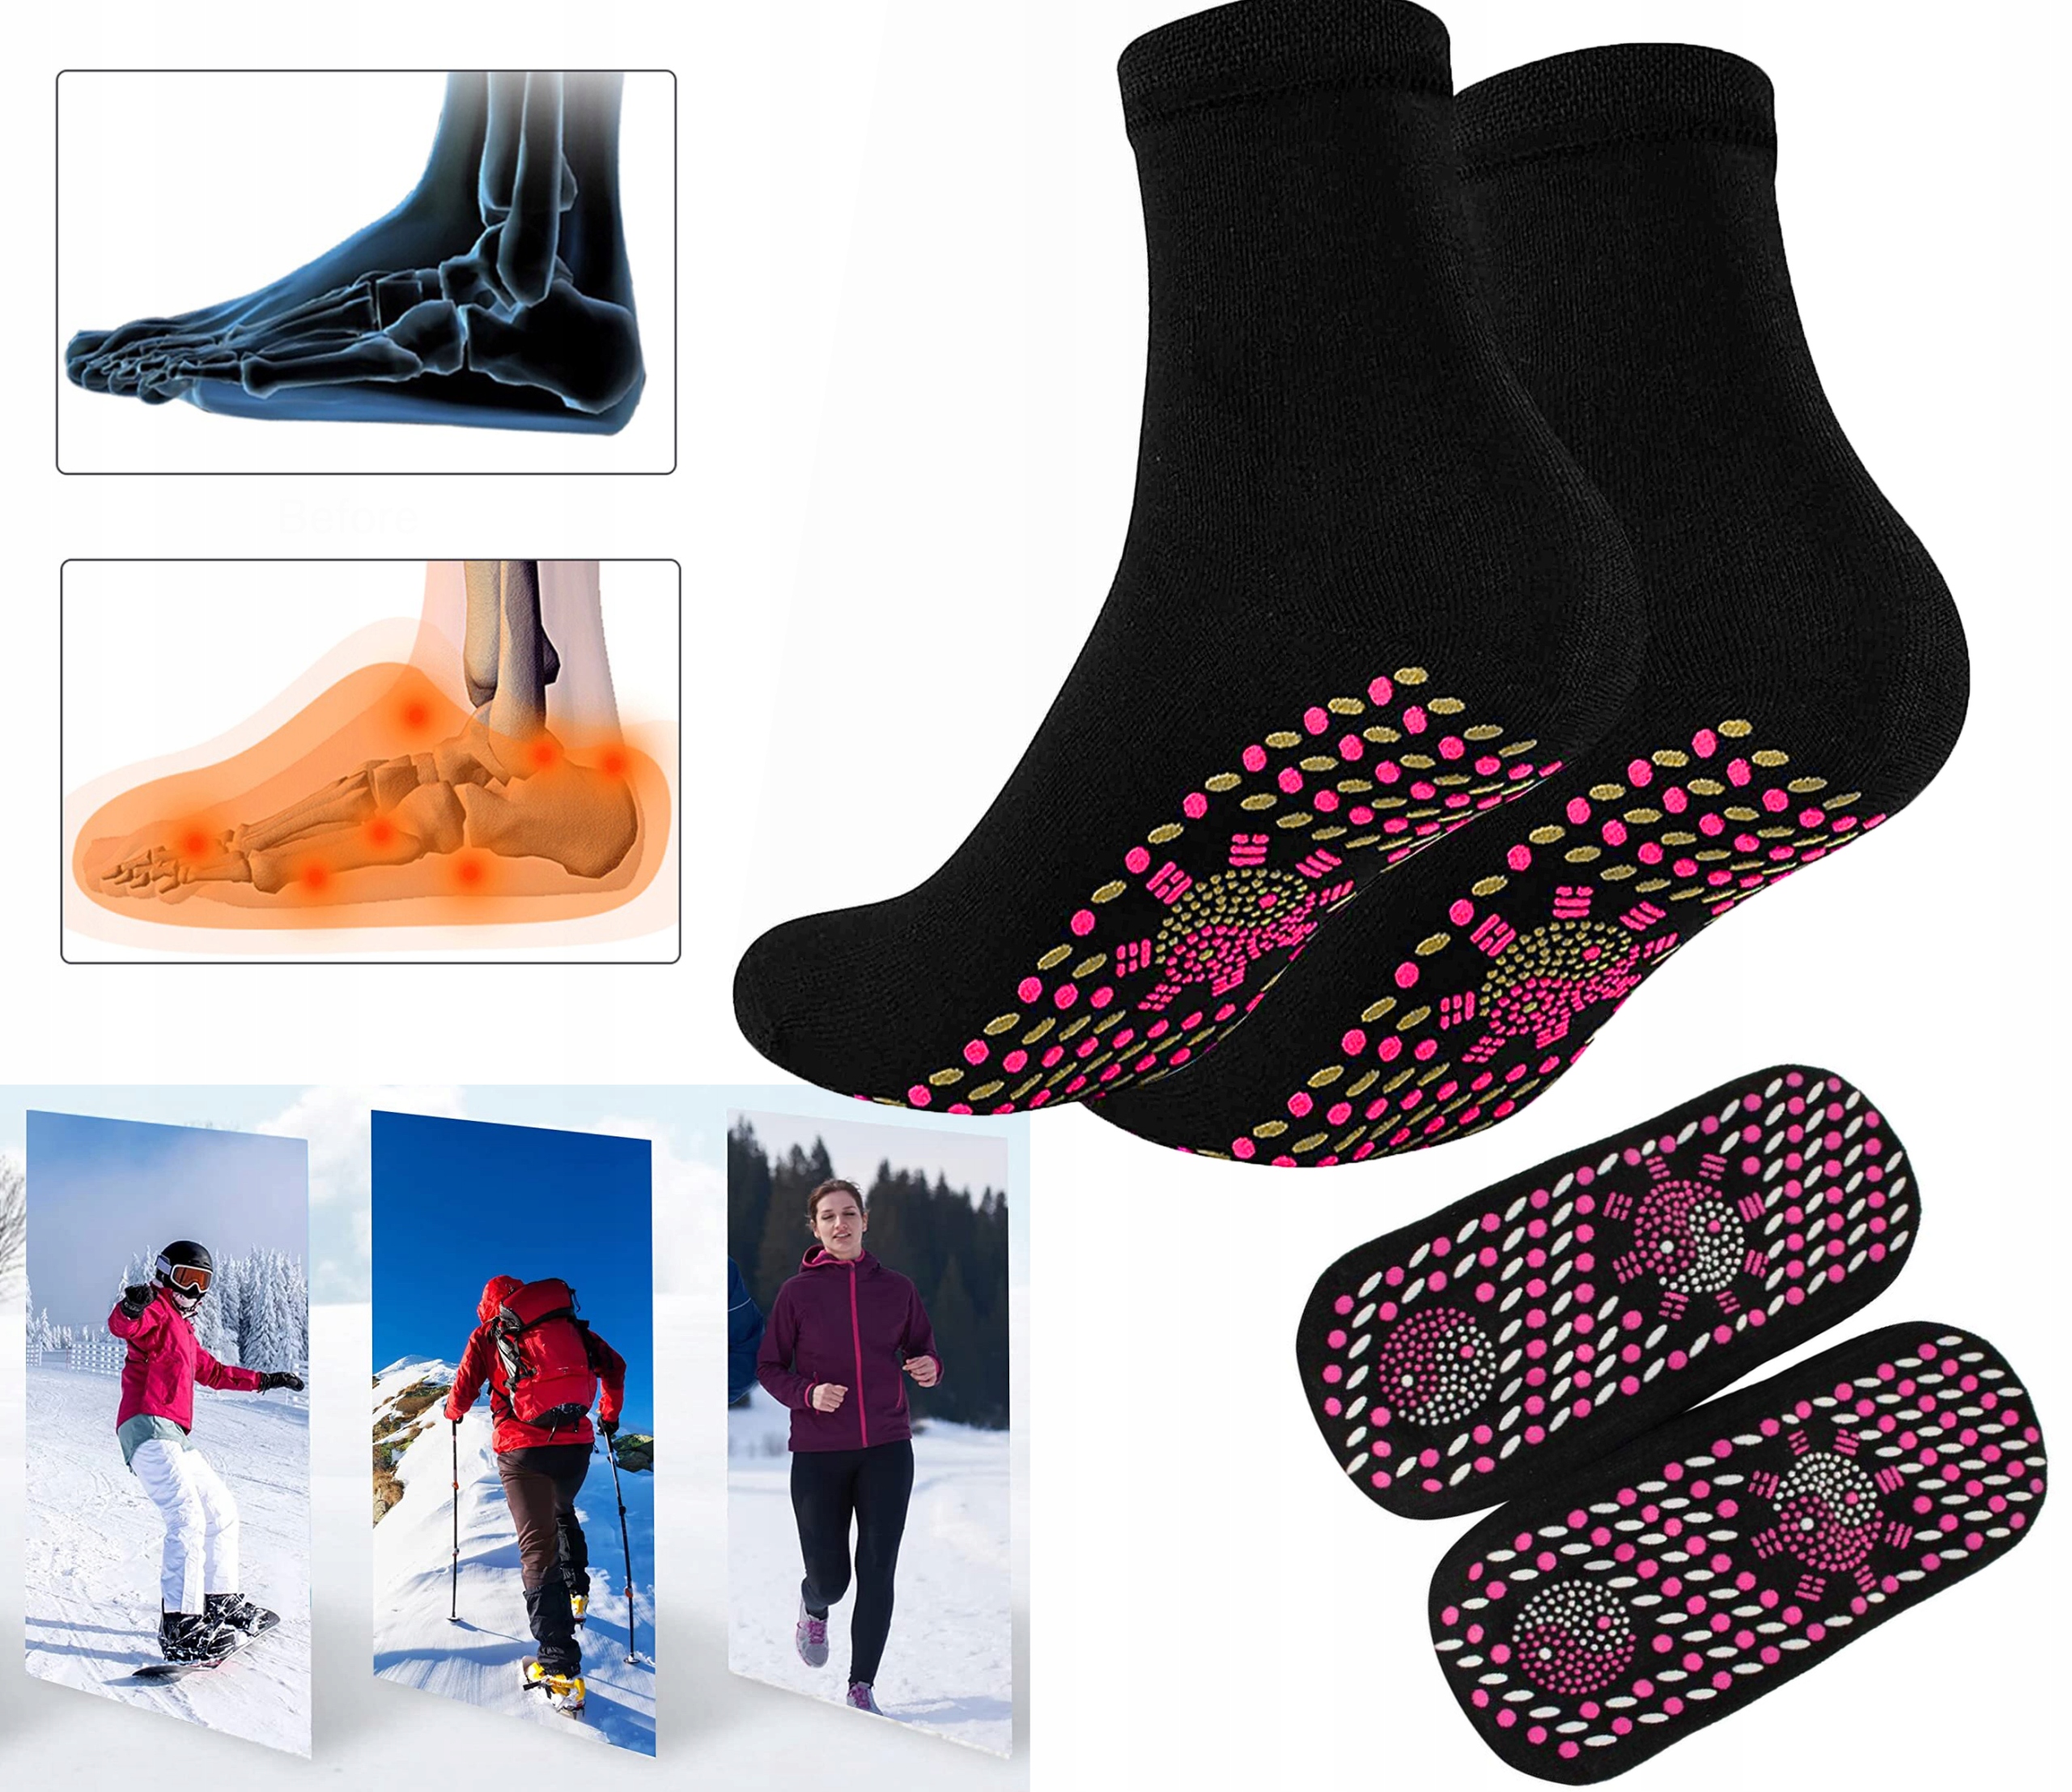 Magnetinės šildomos kojinės su turmalinu (unisex)